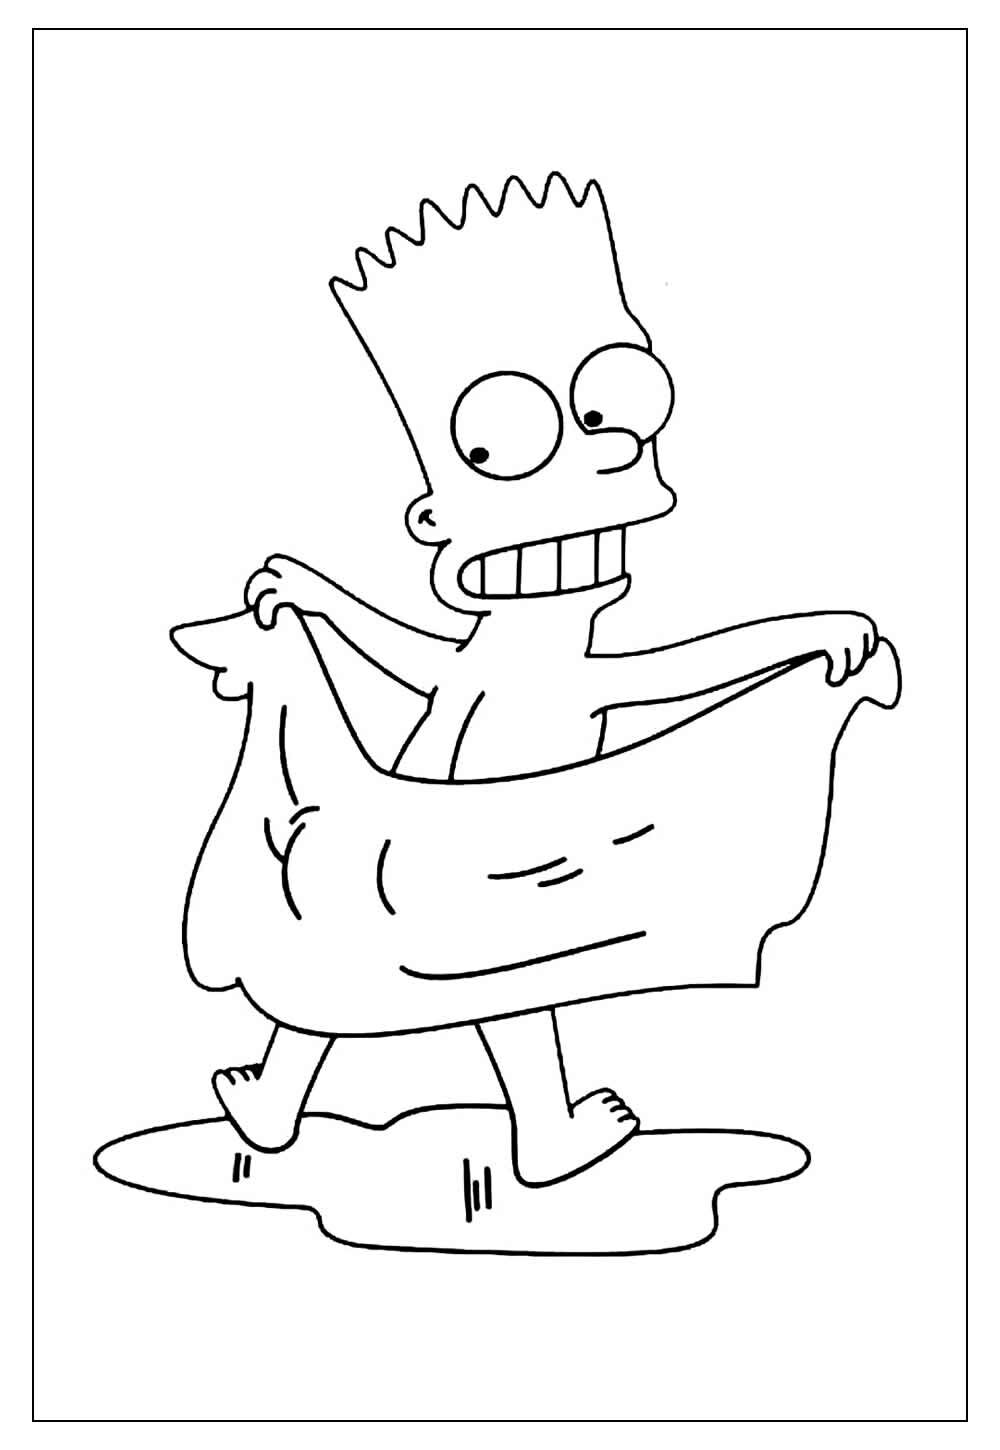 50+ Desenhos dos Simpsons para colorir - Como fazer em casa